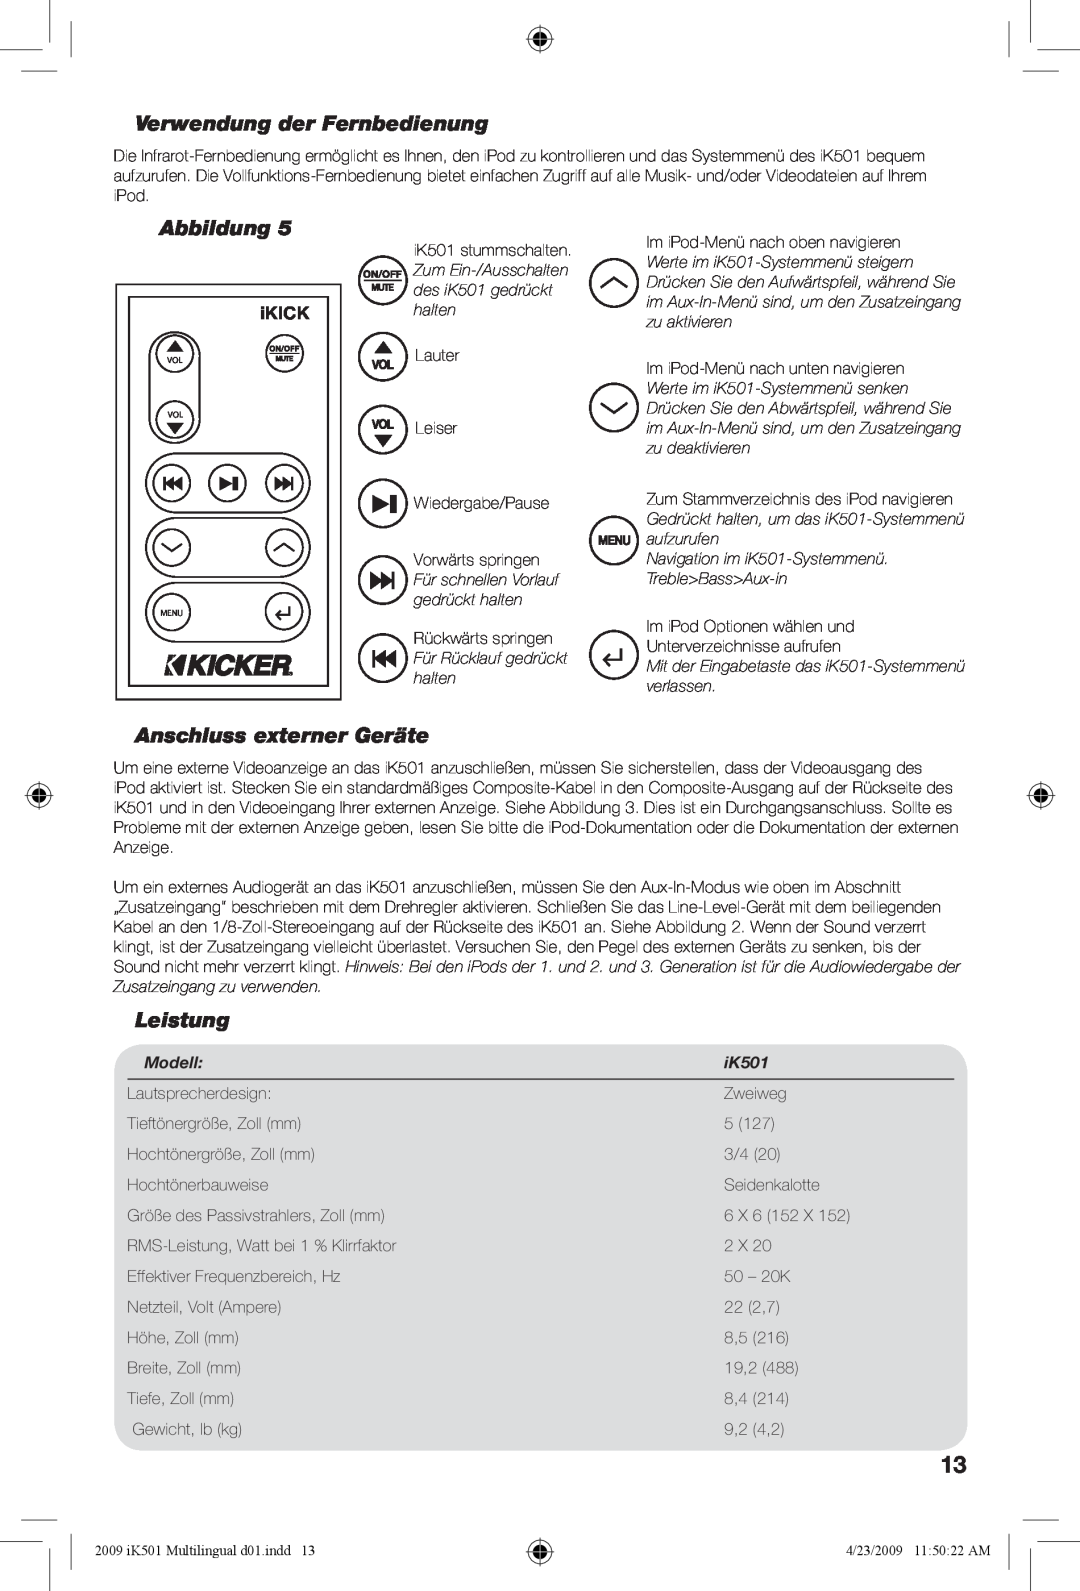 Kicker iK501 manual Verwendung der Fernbedienung, Anschluss externer Geräte, Leistung, Modell, Abbildung, iKICK 